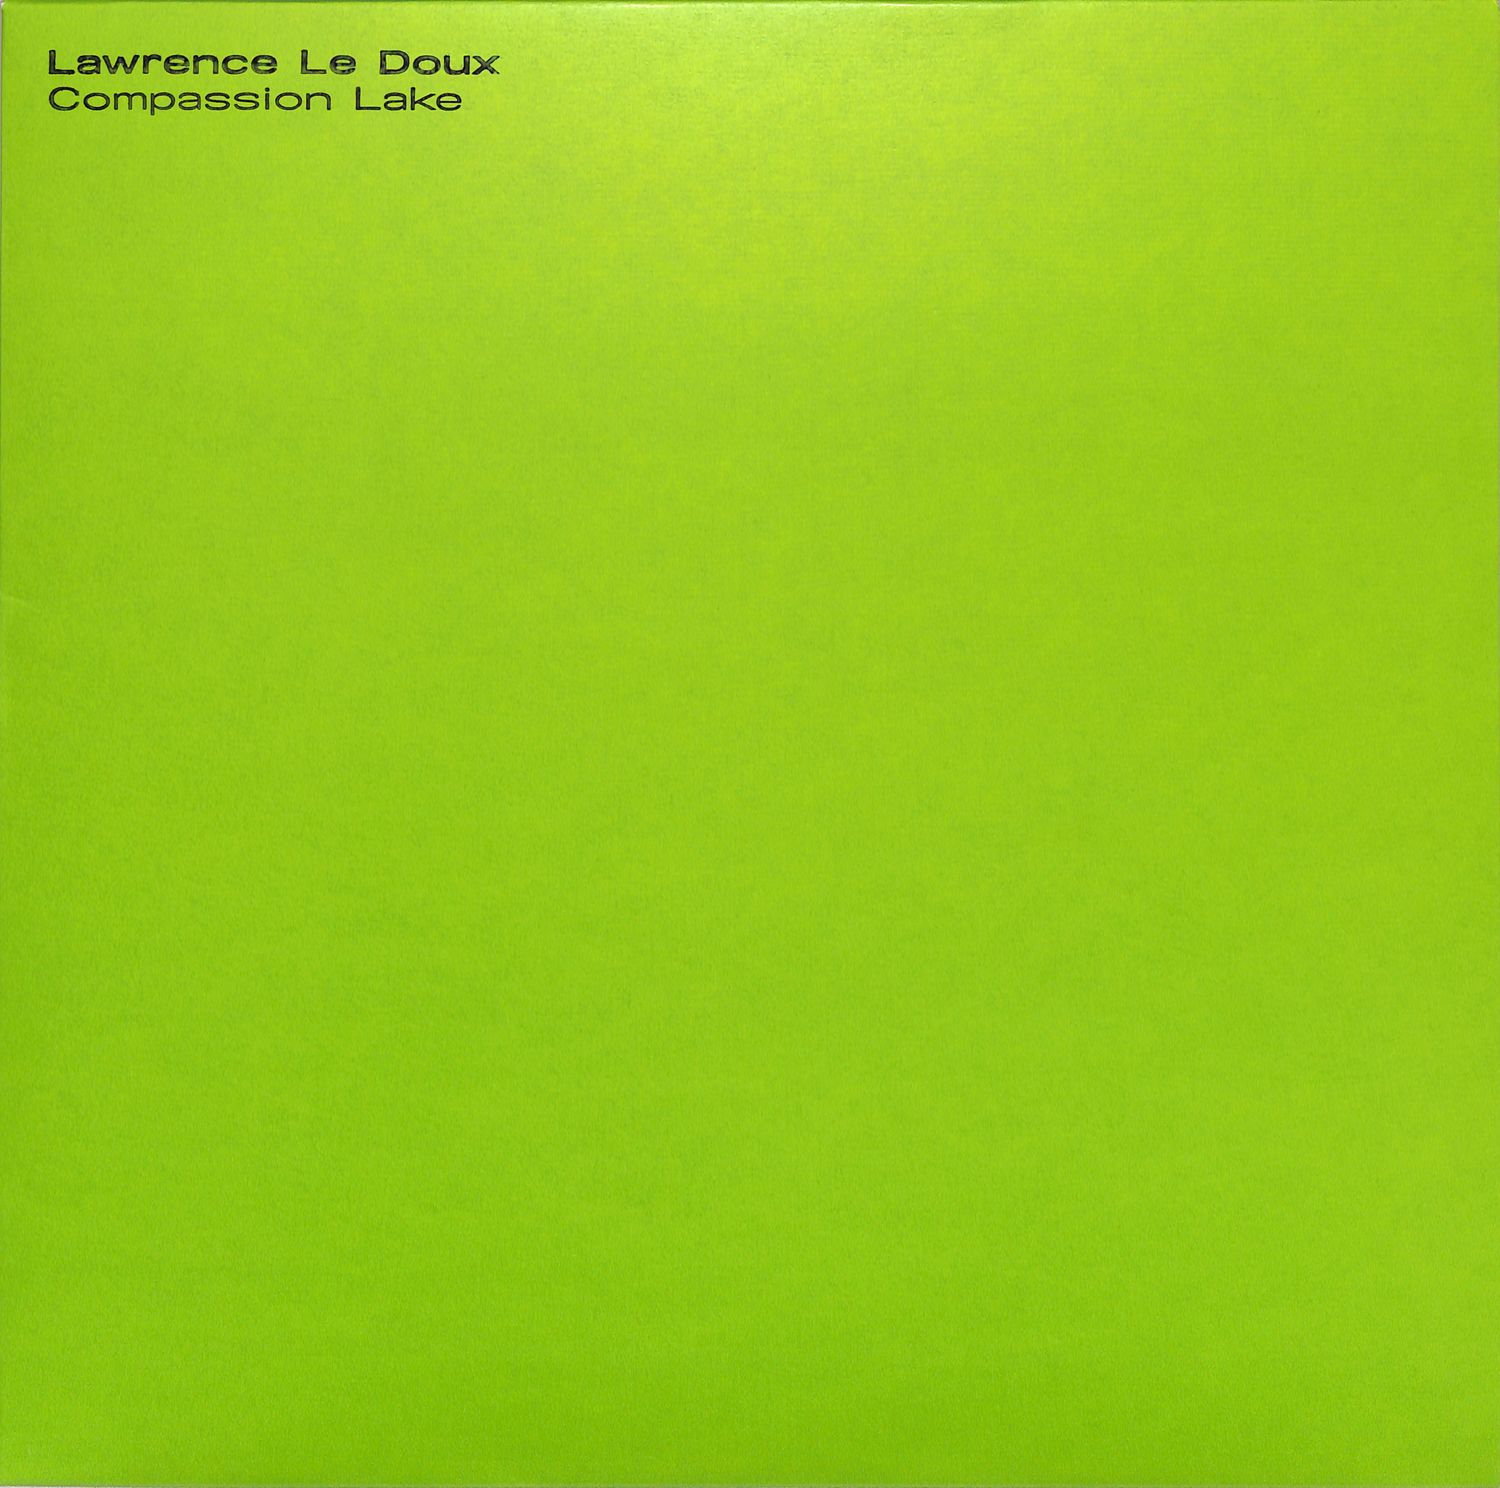 Lawrence Le Doux - COMPASSION LAKE